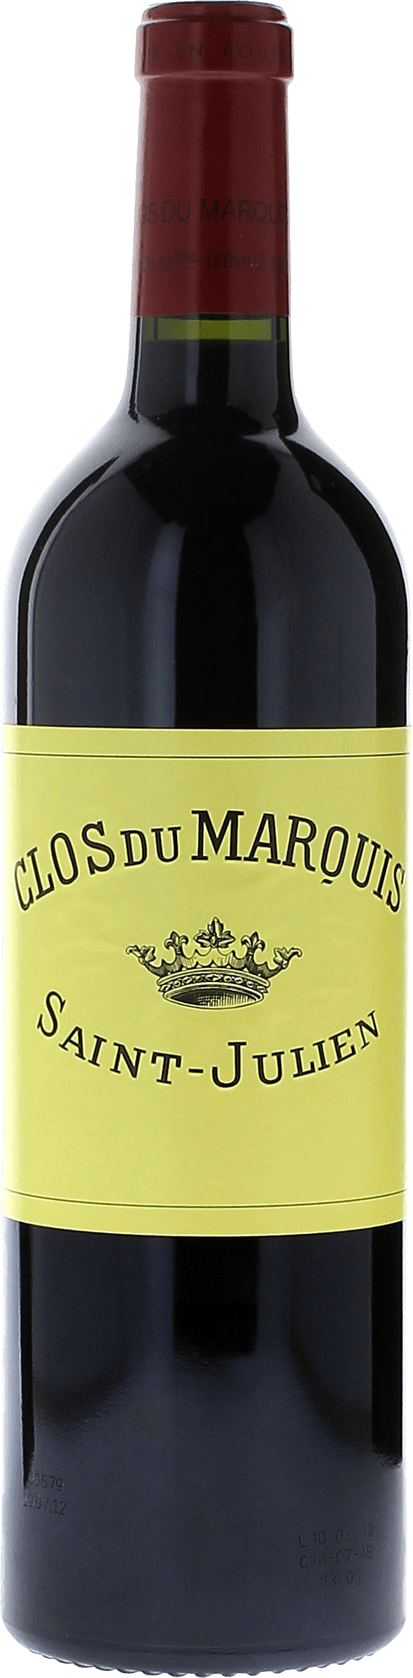 Clos du marquis 2010 2me vin de LEOVILLE LAS CASES Saint-Julien, Bordeaux rouge